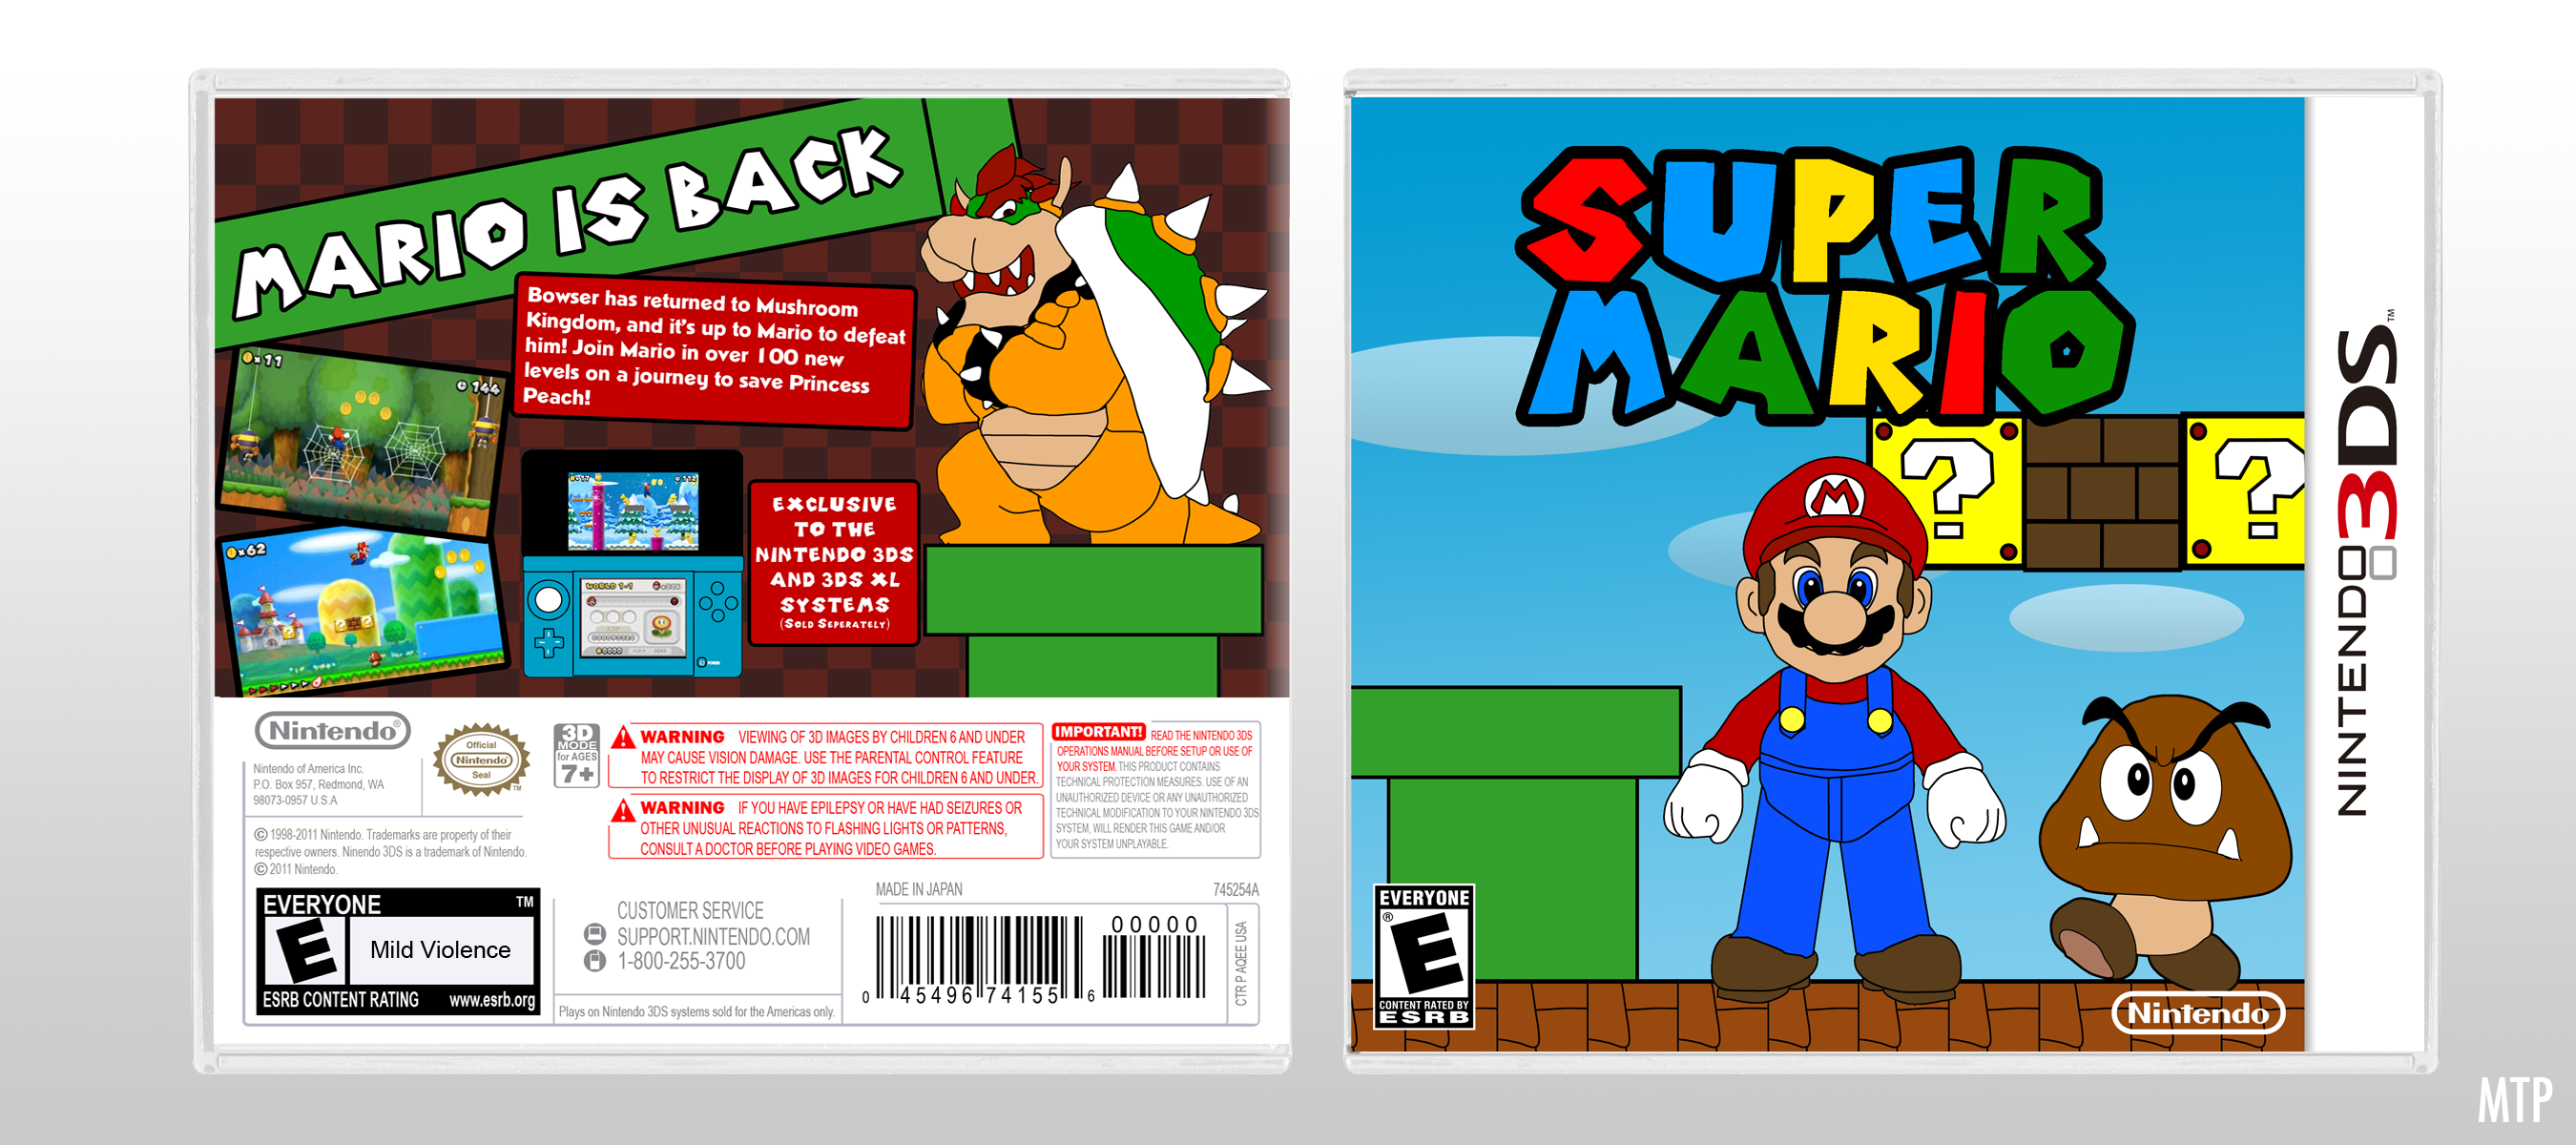 Super Mario box cover